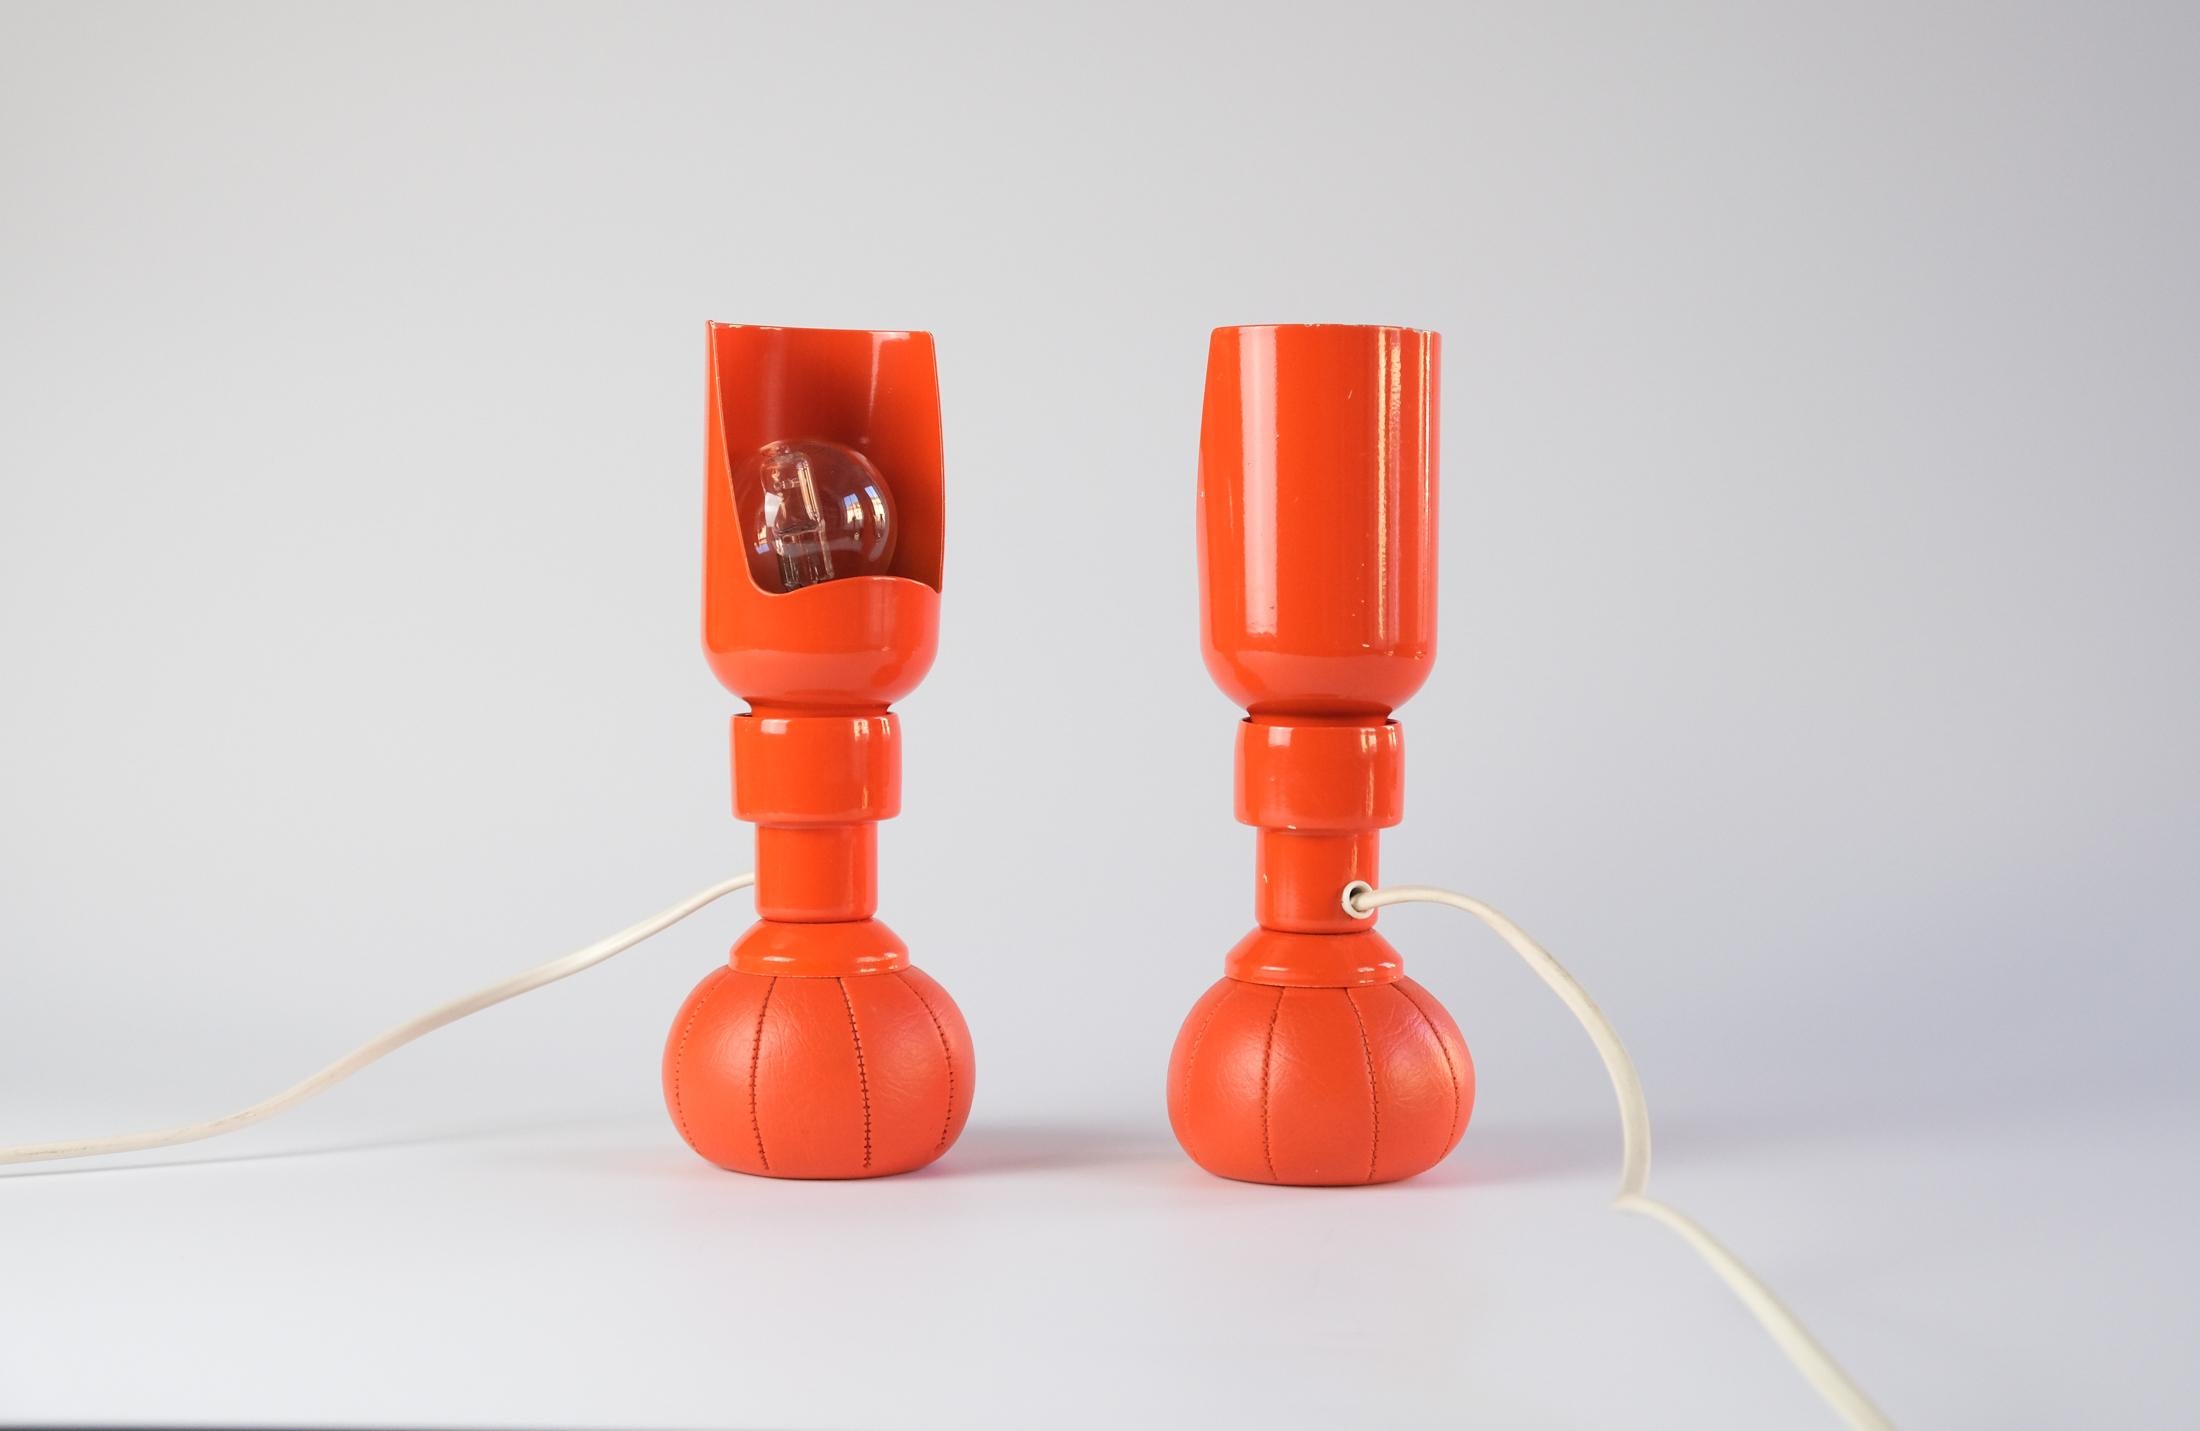 Nous vendons une paire de lampes de table orange 600P de GINO SARFATTI, conçues en 1966 et produites par Arteluce en Italie, qui sont extrêmement rares.

Grâce à leur base en pochette lestée remplie de plomb, les lampes peuvent être placées dans